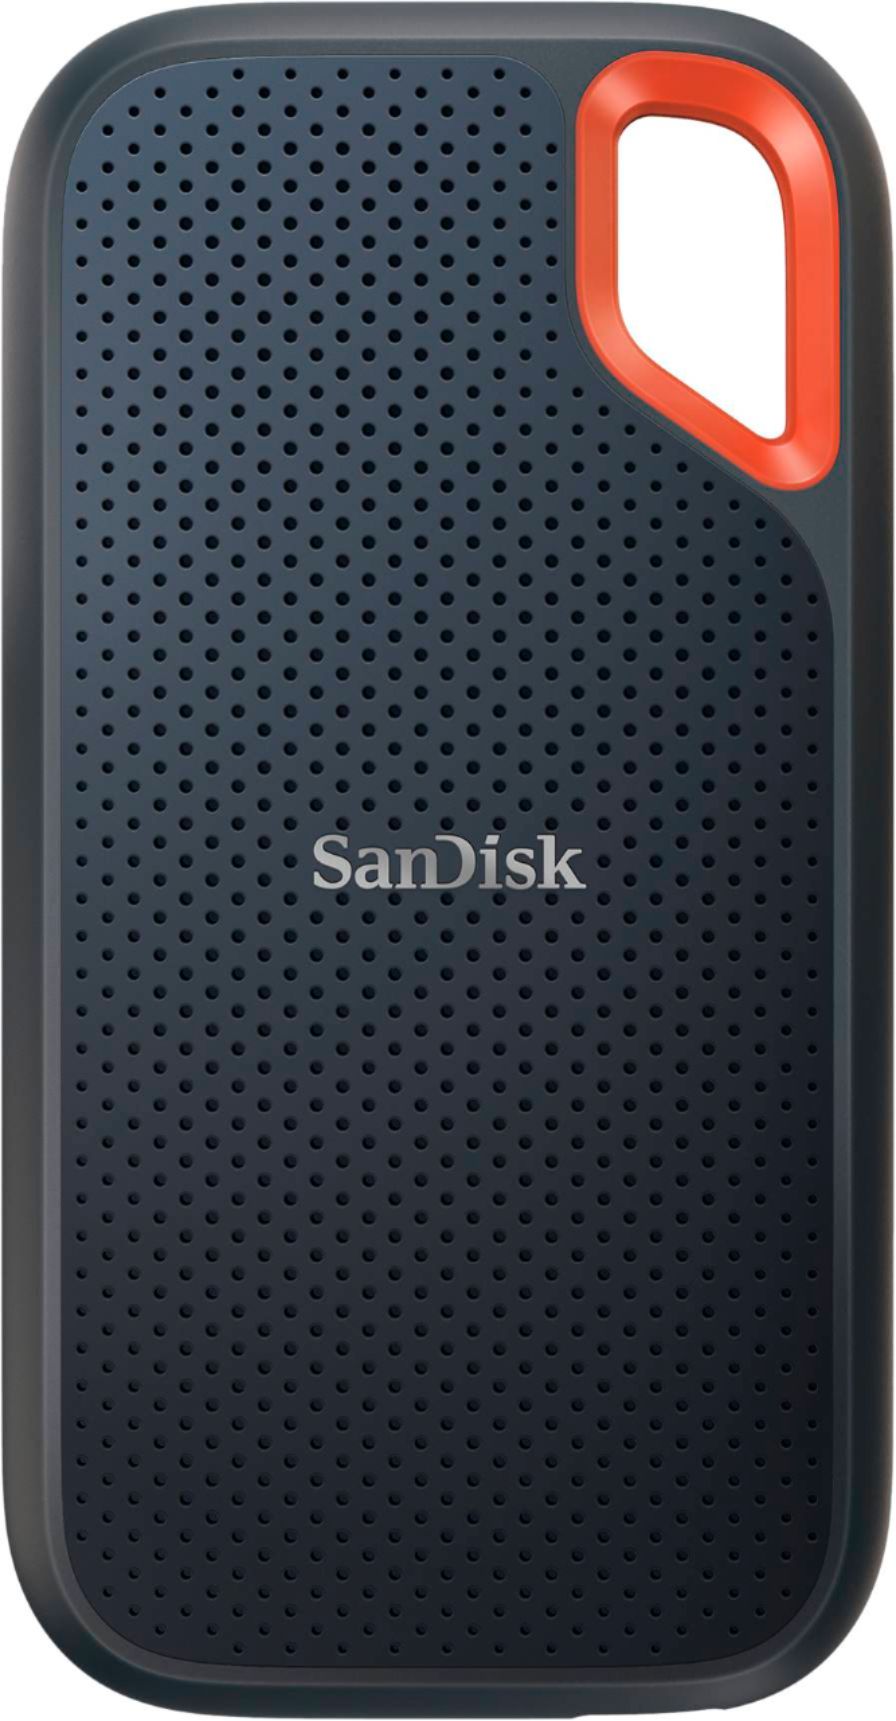 SanDisk Extreme Portable 2TB External USB-C NVMe SSD Black  SDSSDE61-2T00-G25 - Best Buy